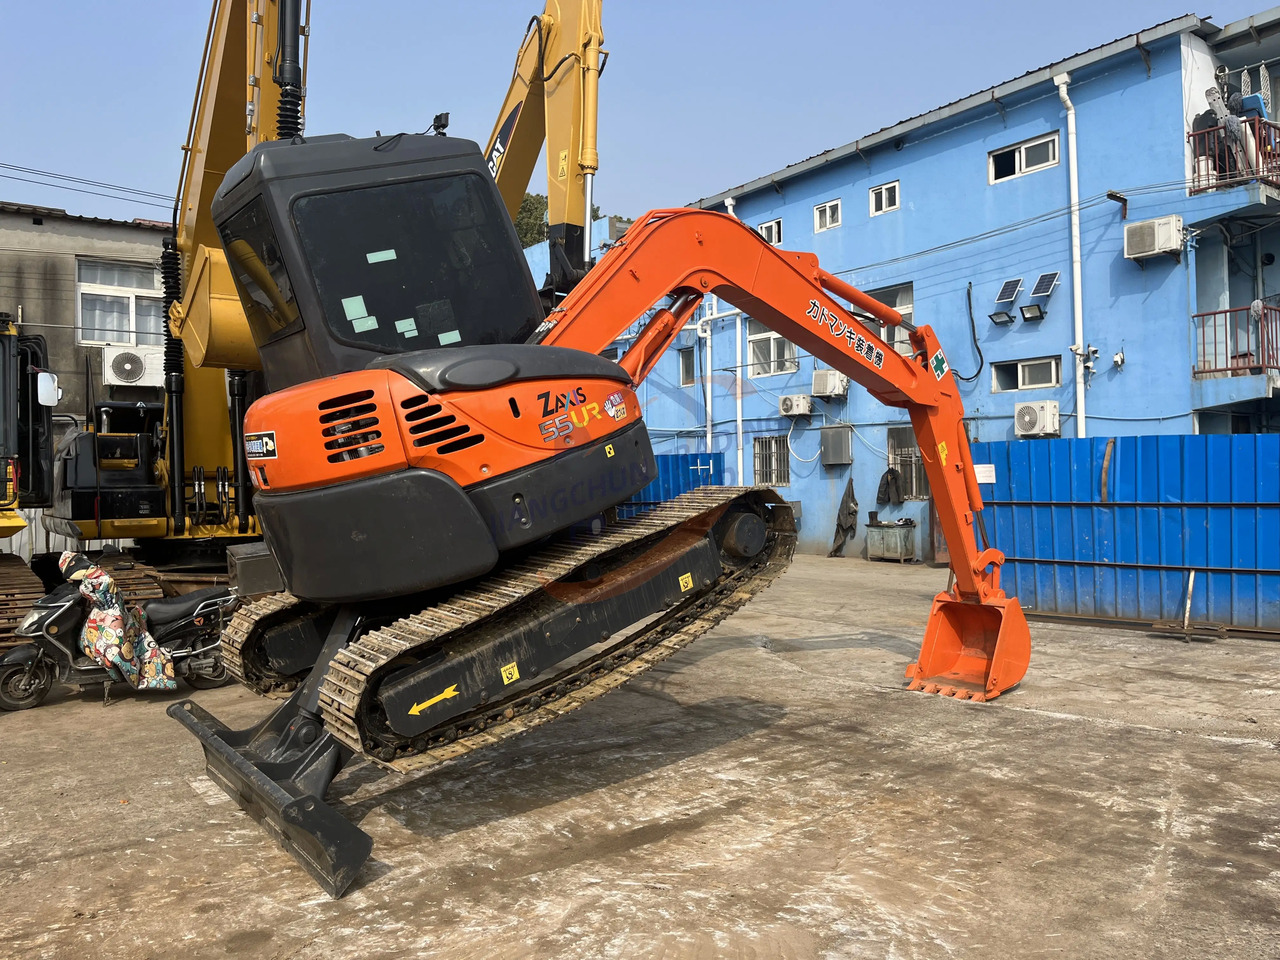 Μίνι εκσκαφέας Used Hitachi excavator ZX55UR in good condition for sale: φωτογραφία 3